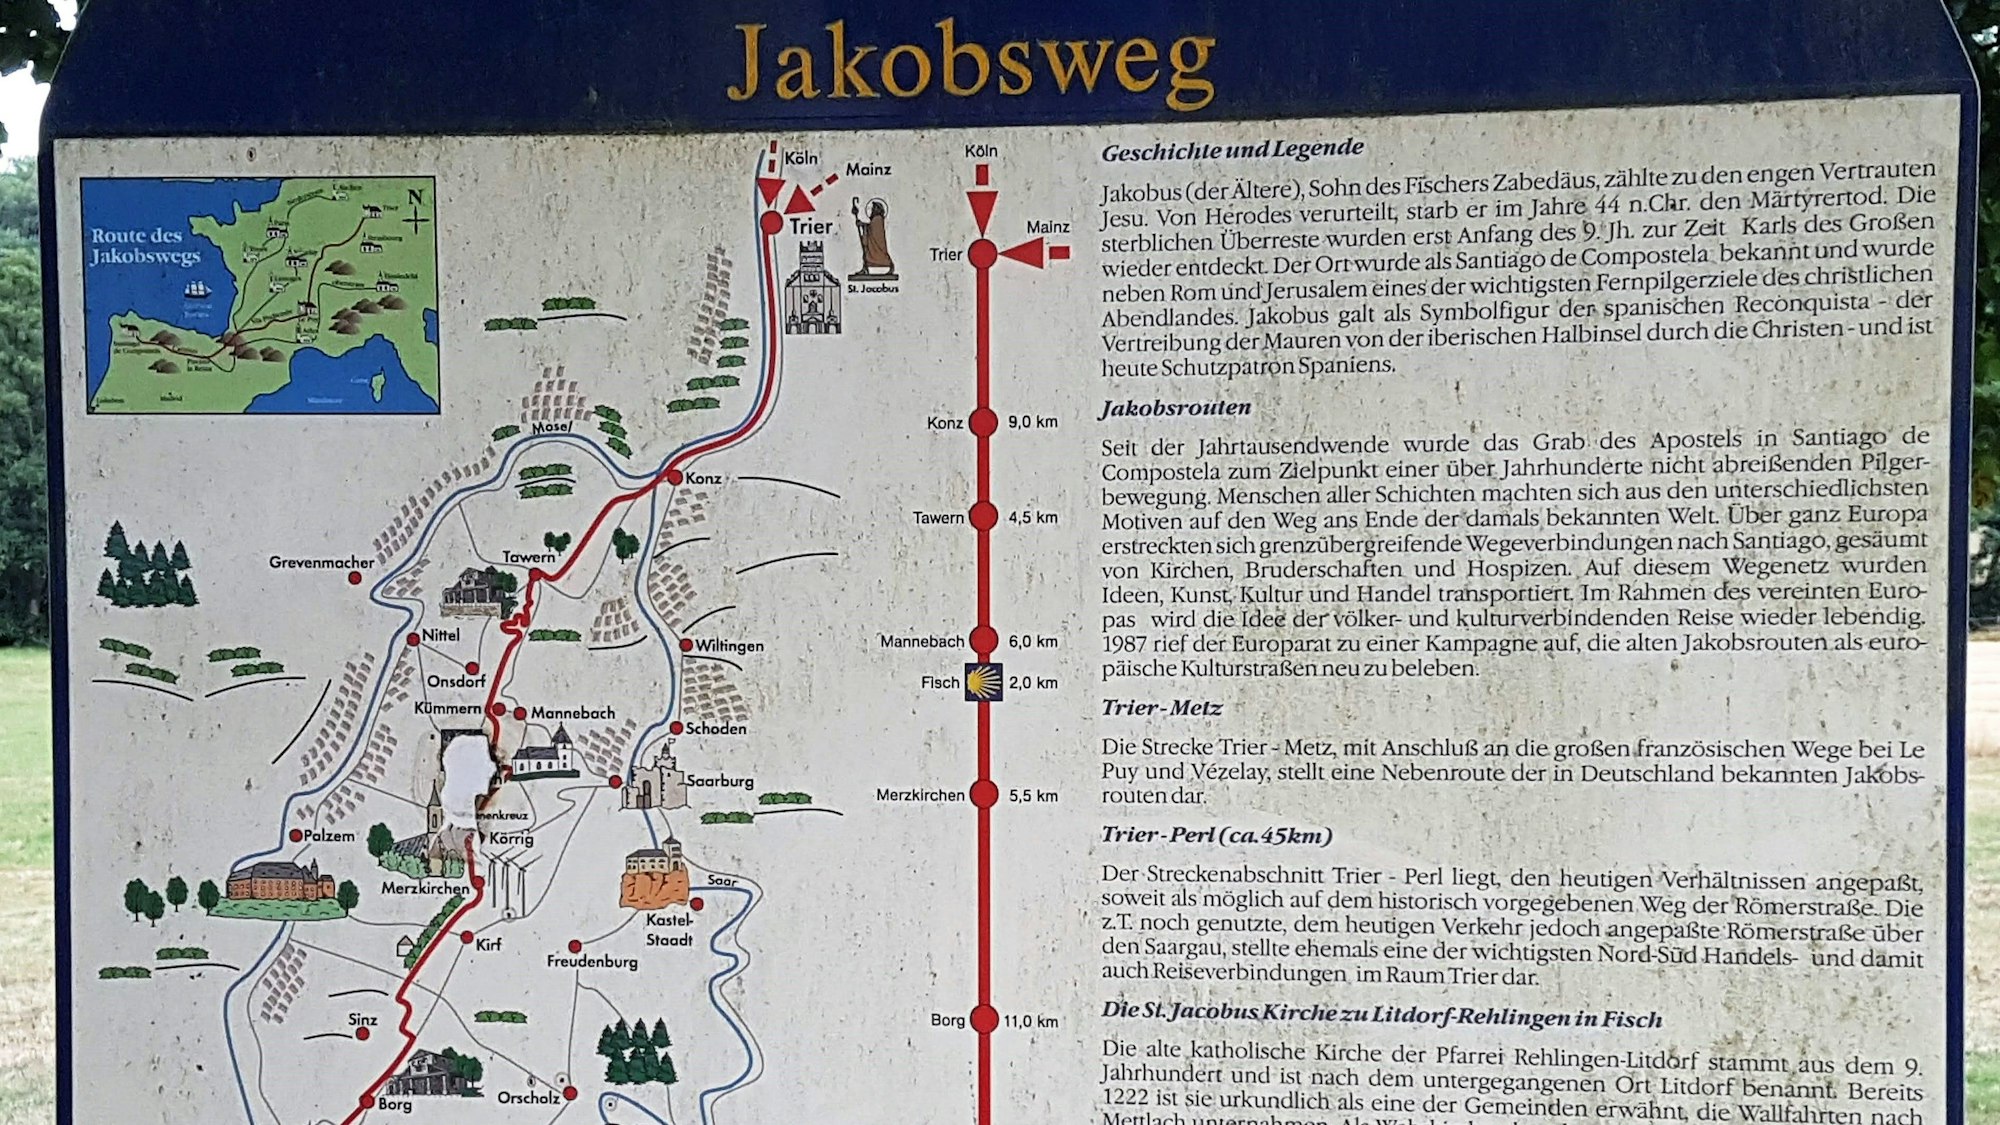 Eine Informationstafel zeigt den Jakobsweg an.